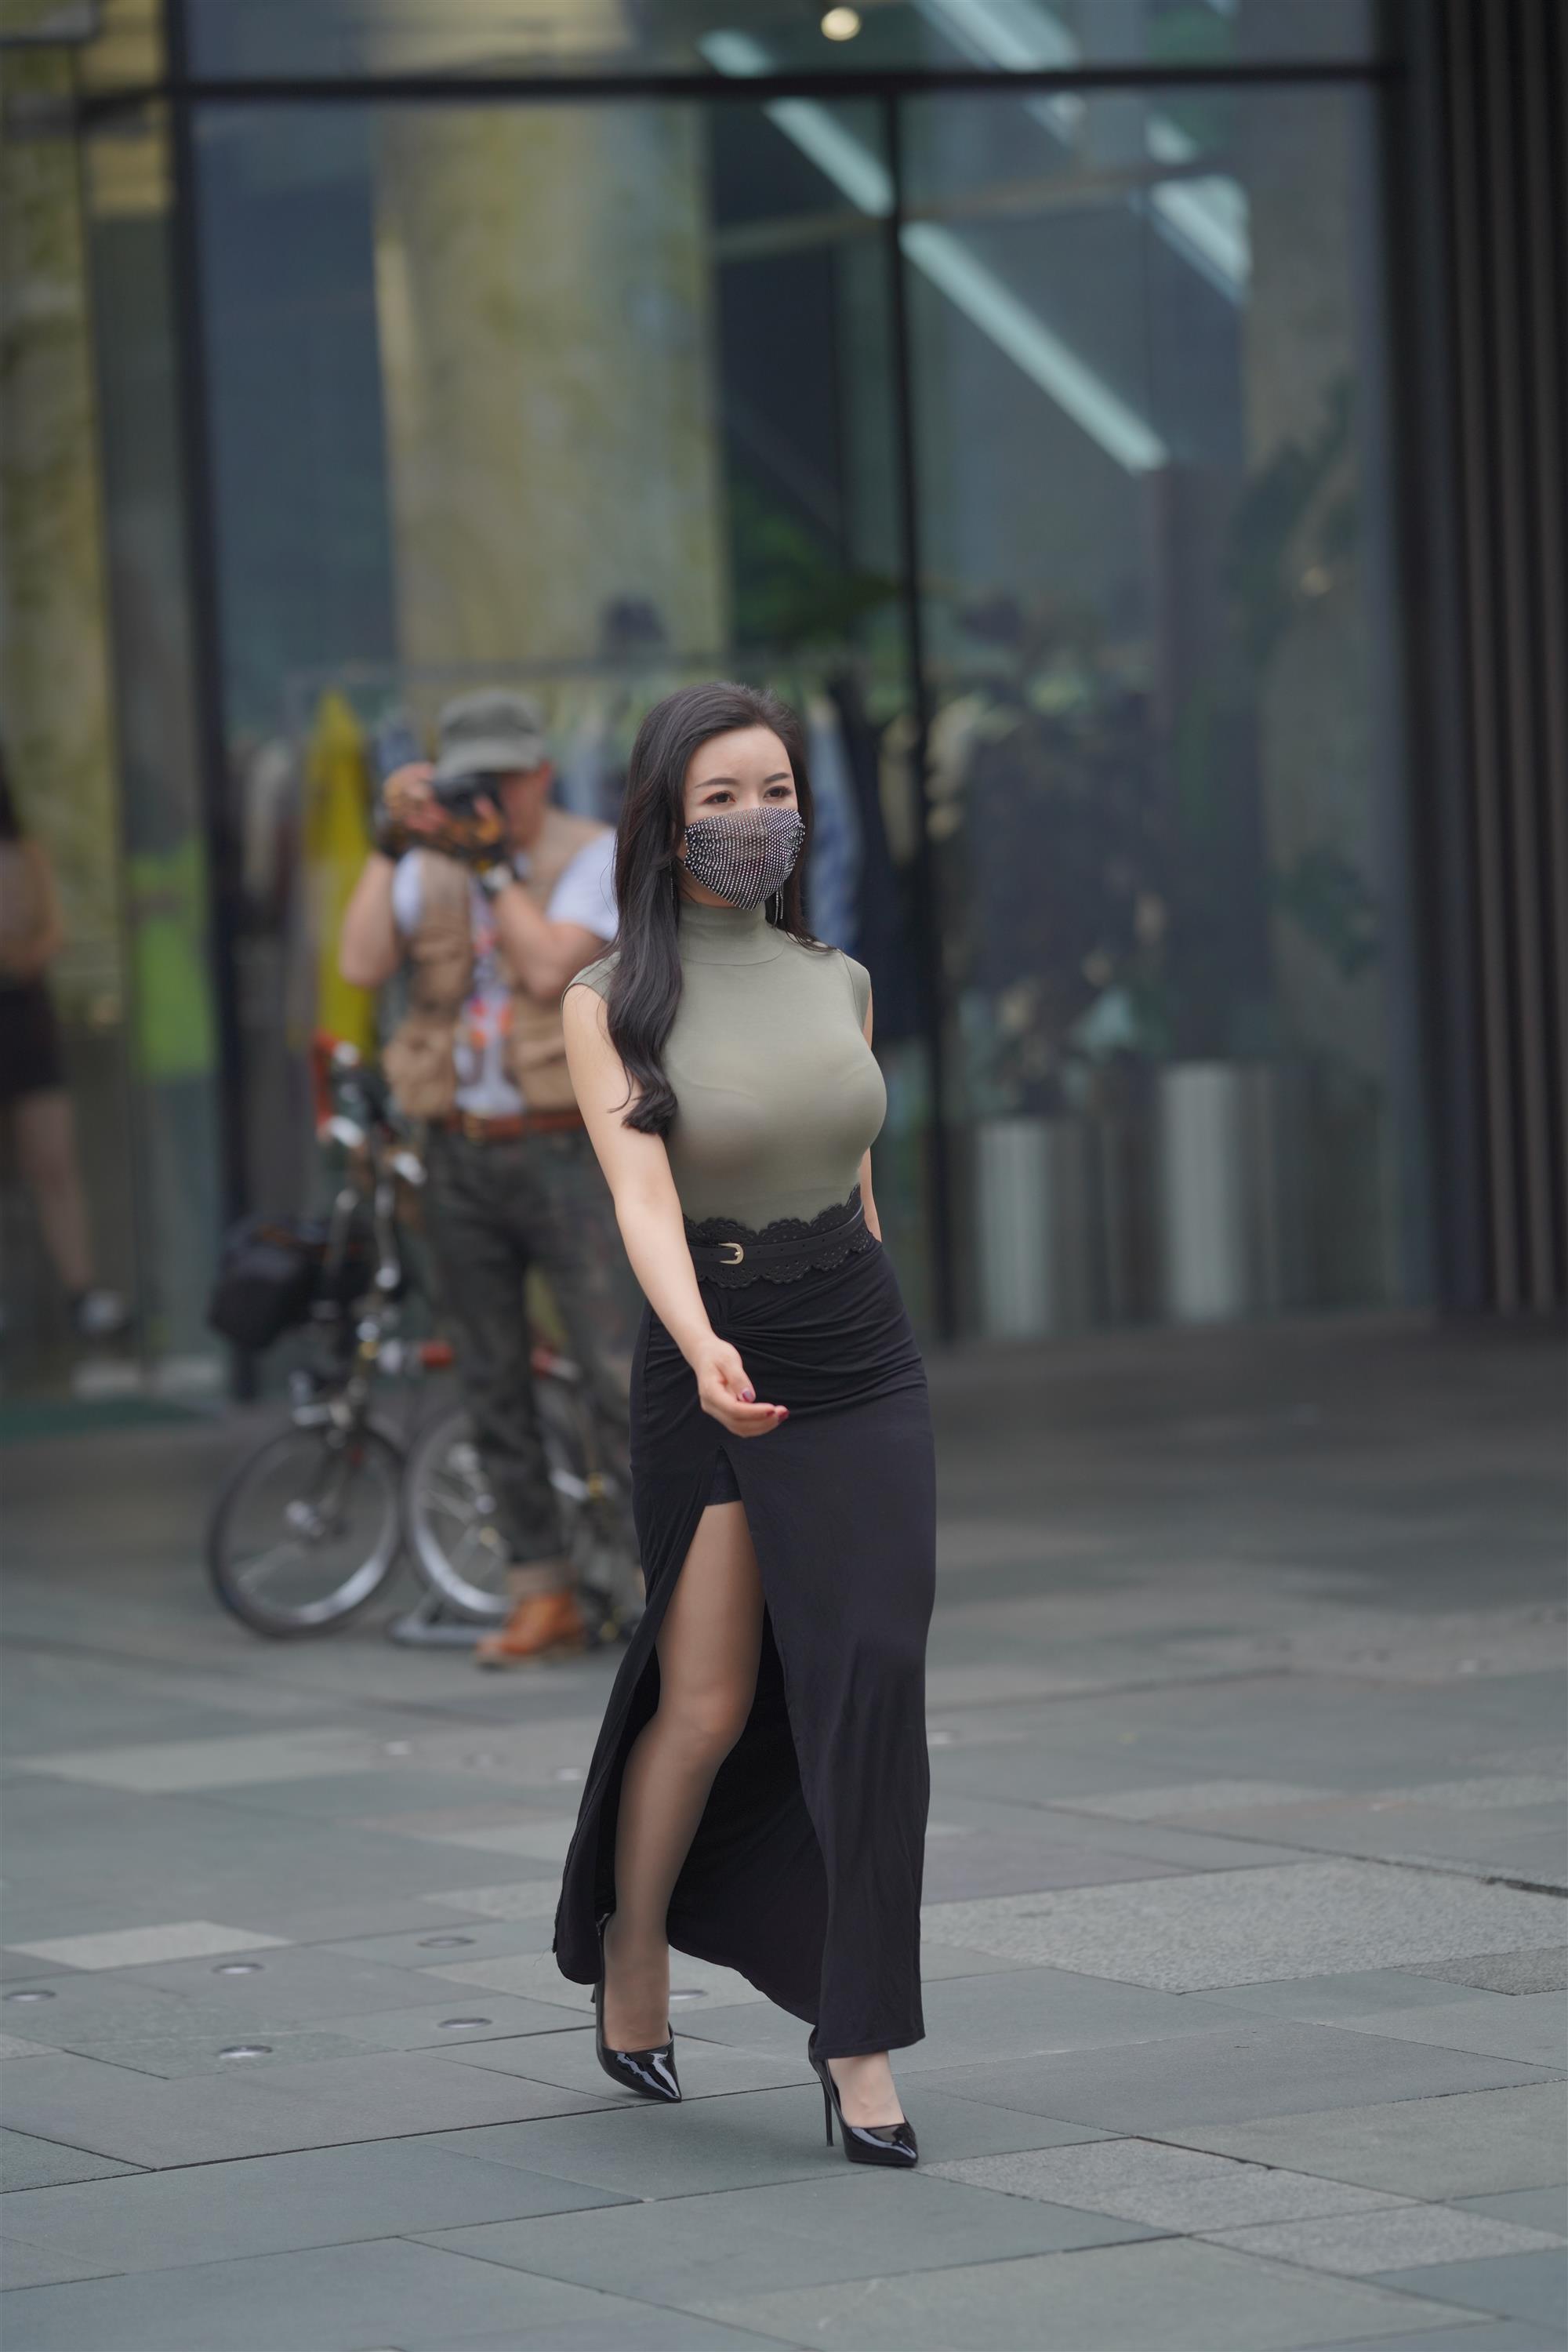 Street 欣儿 Long black skirt - 104.jpg